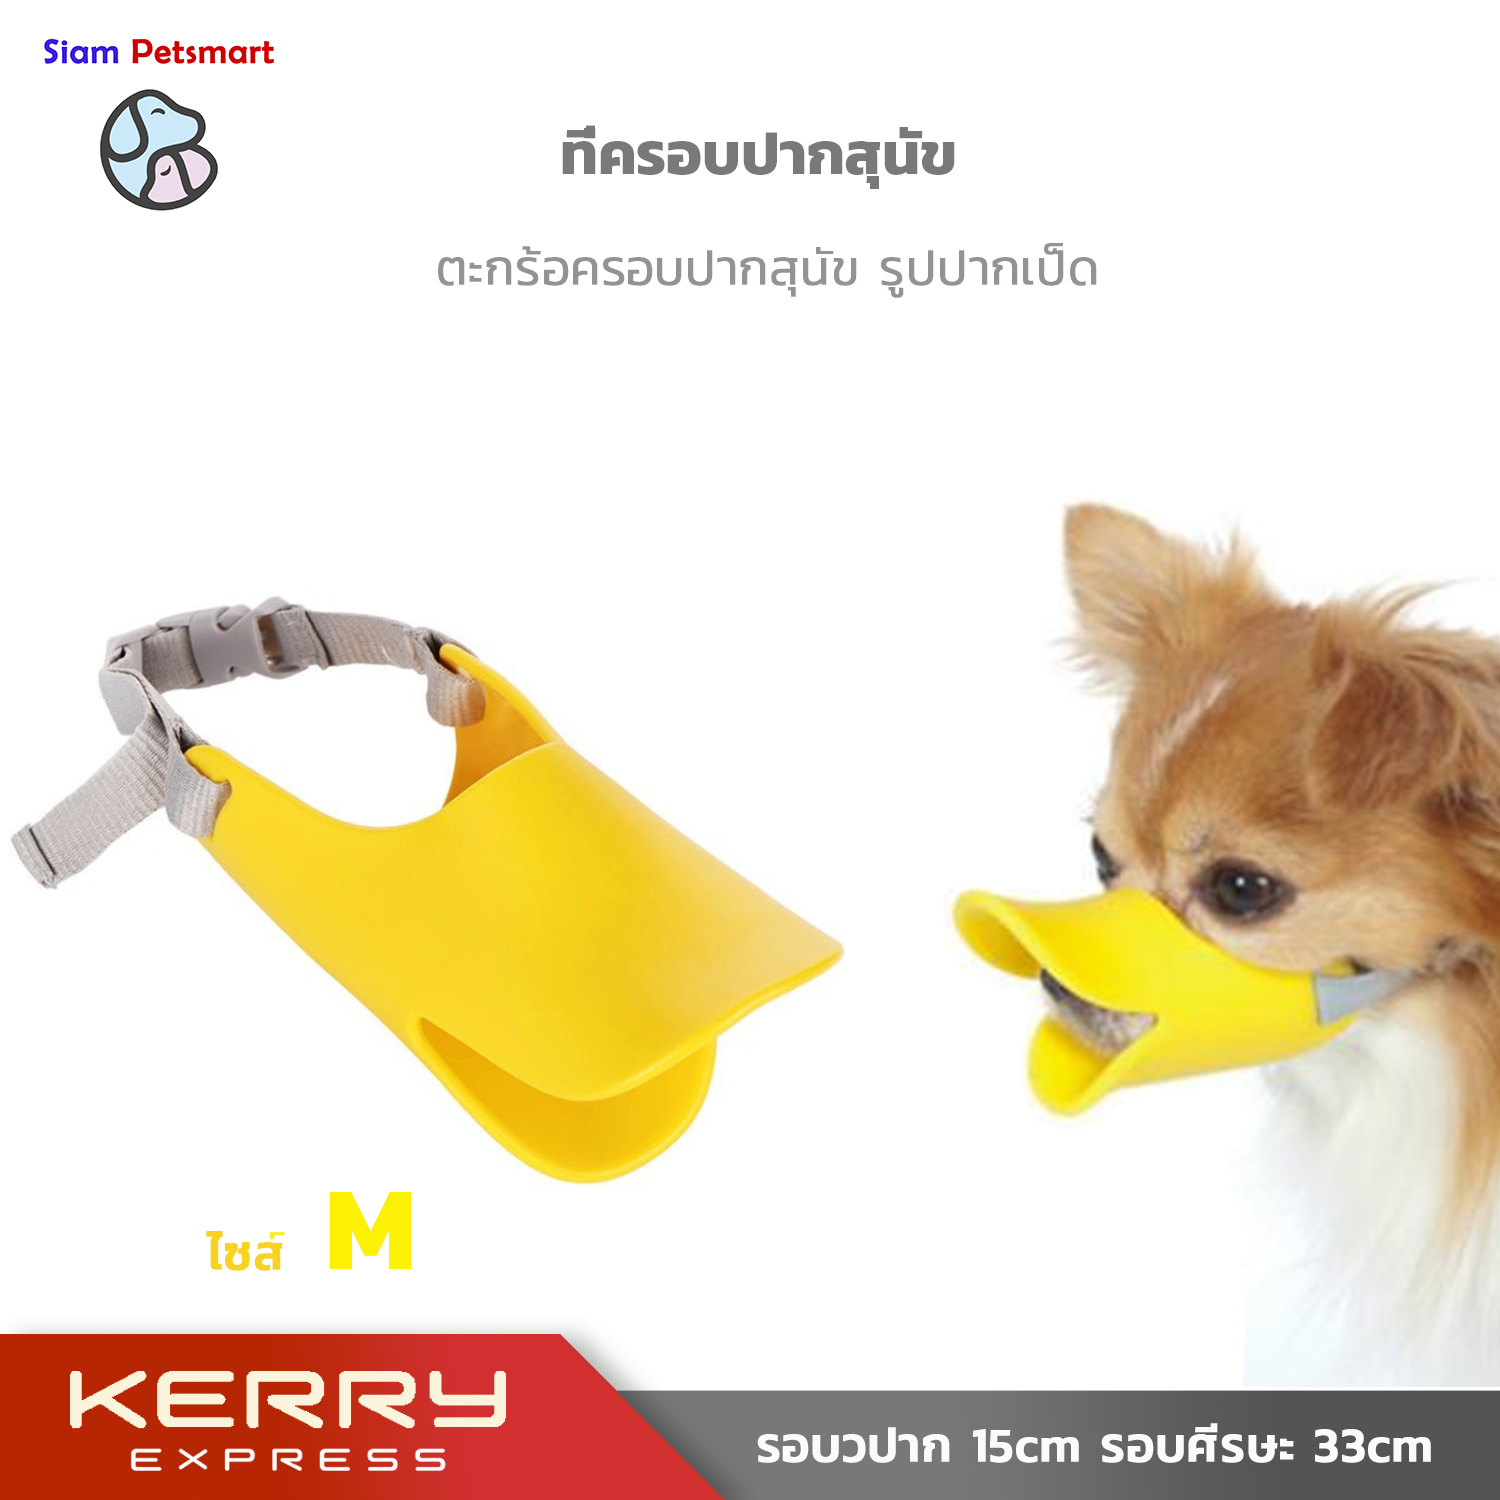 ที่ครอบปากสุนัข ตะกร้อครอบปากสุนัข รูปปากเป็ด ที่ครอบปากสุนัข รูปปากเป็ด Pet dog Mask Muzzle duck mouth Size M( Mouth 15cm, Head circumference 15-33 cm),Yellow